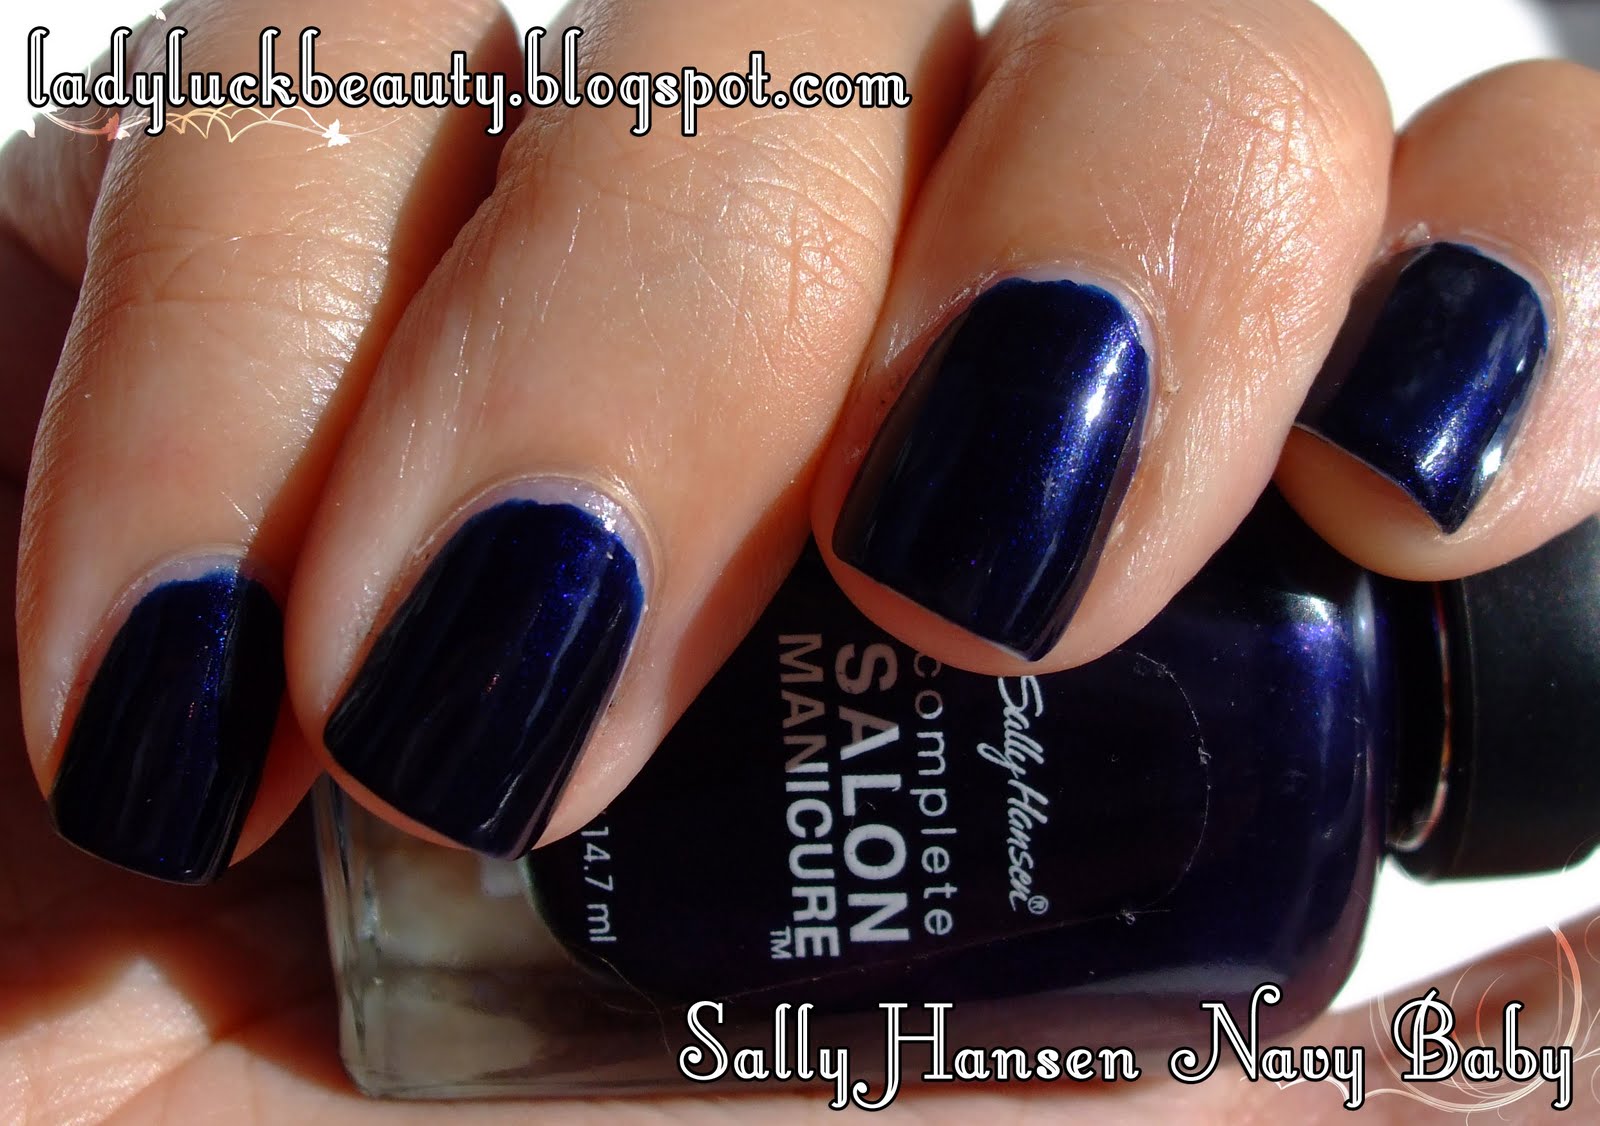 3. Sally Hansen "Navy Fleet" Nail Polish - wide 8